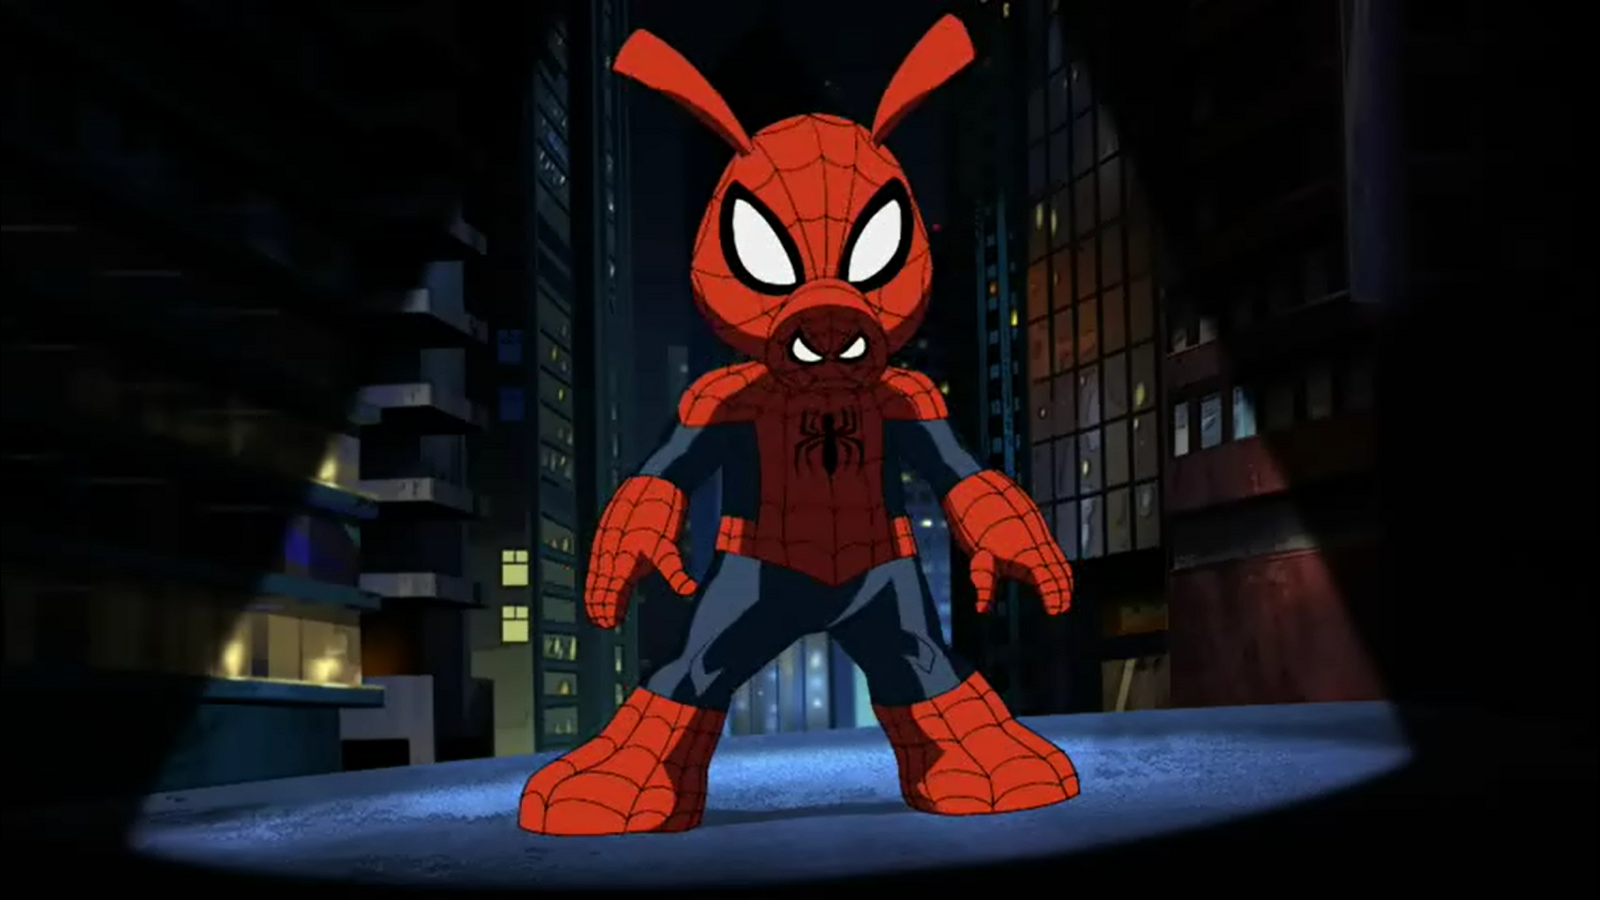 Spider-man(Marvel)+Spider Pig(Simpson). 